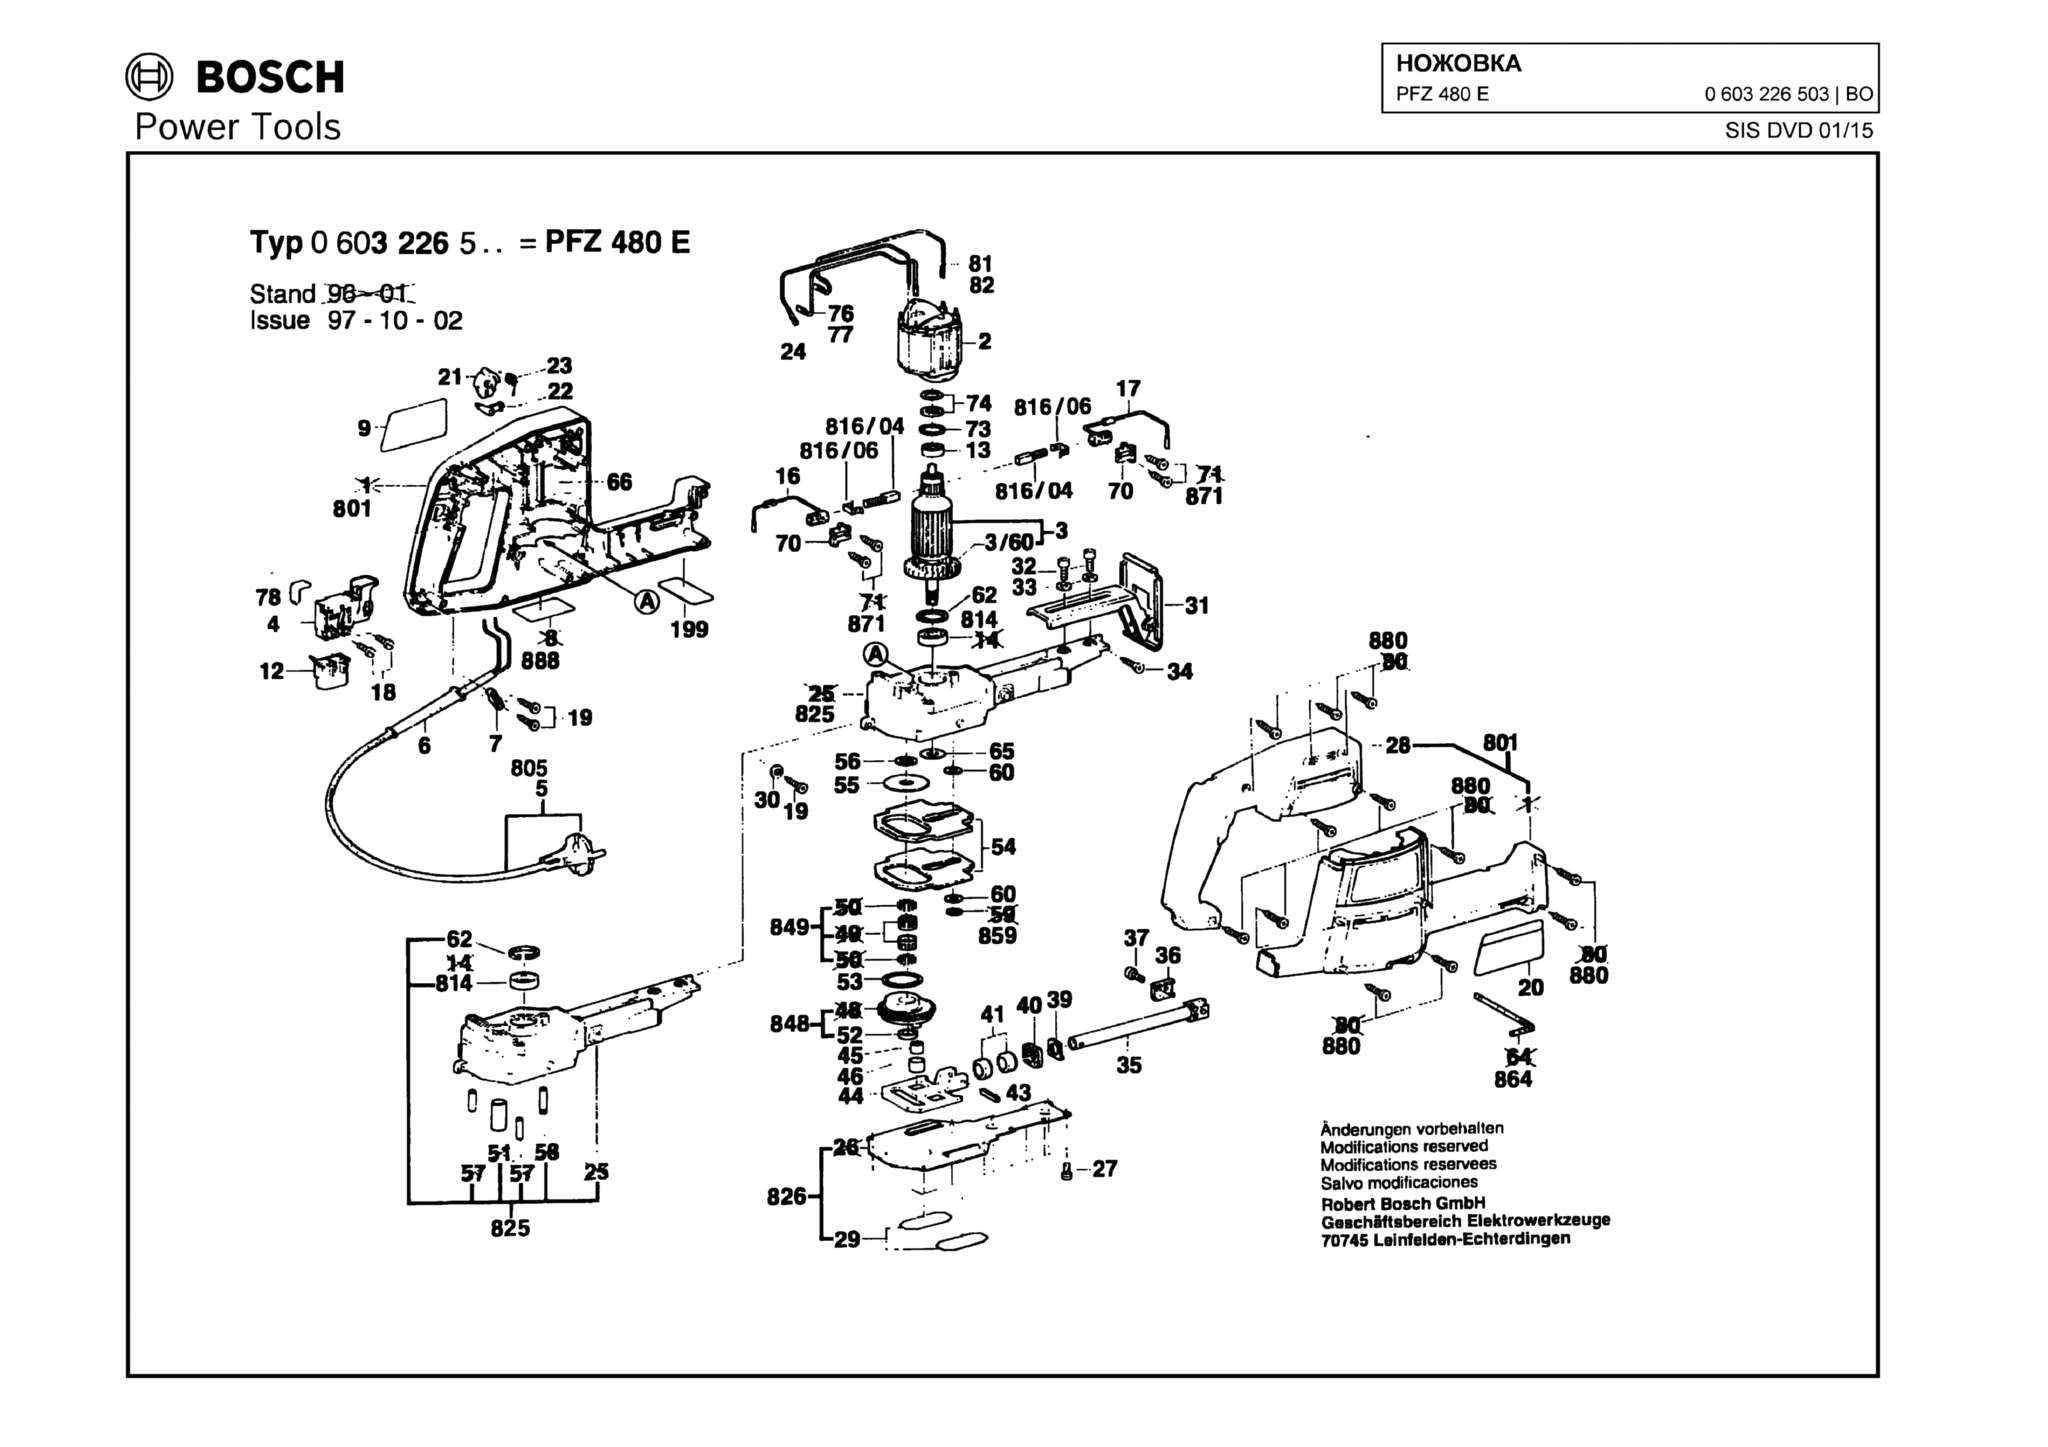 Запчасти, схема и деталировка Bosch PFZ 480 E (ТИП 0603226503)